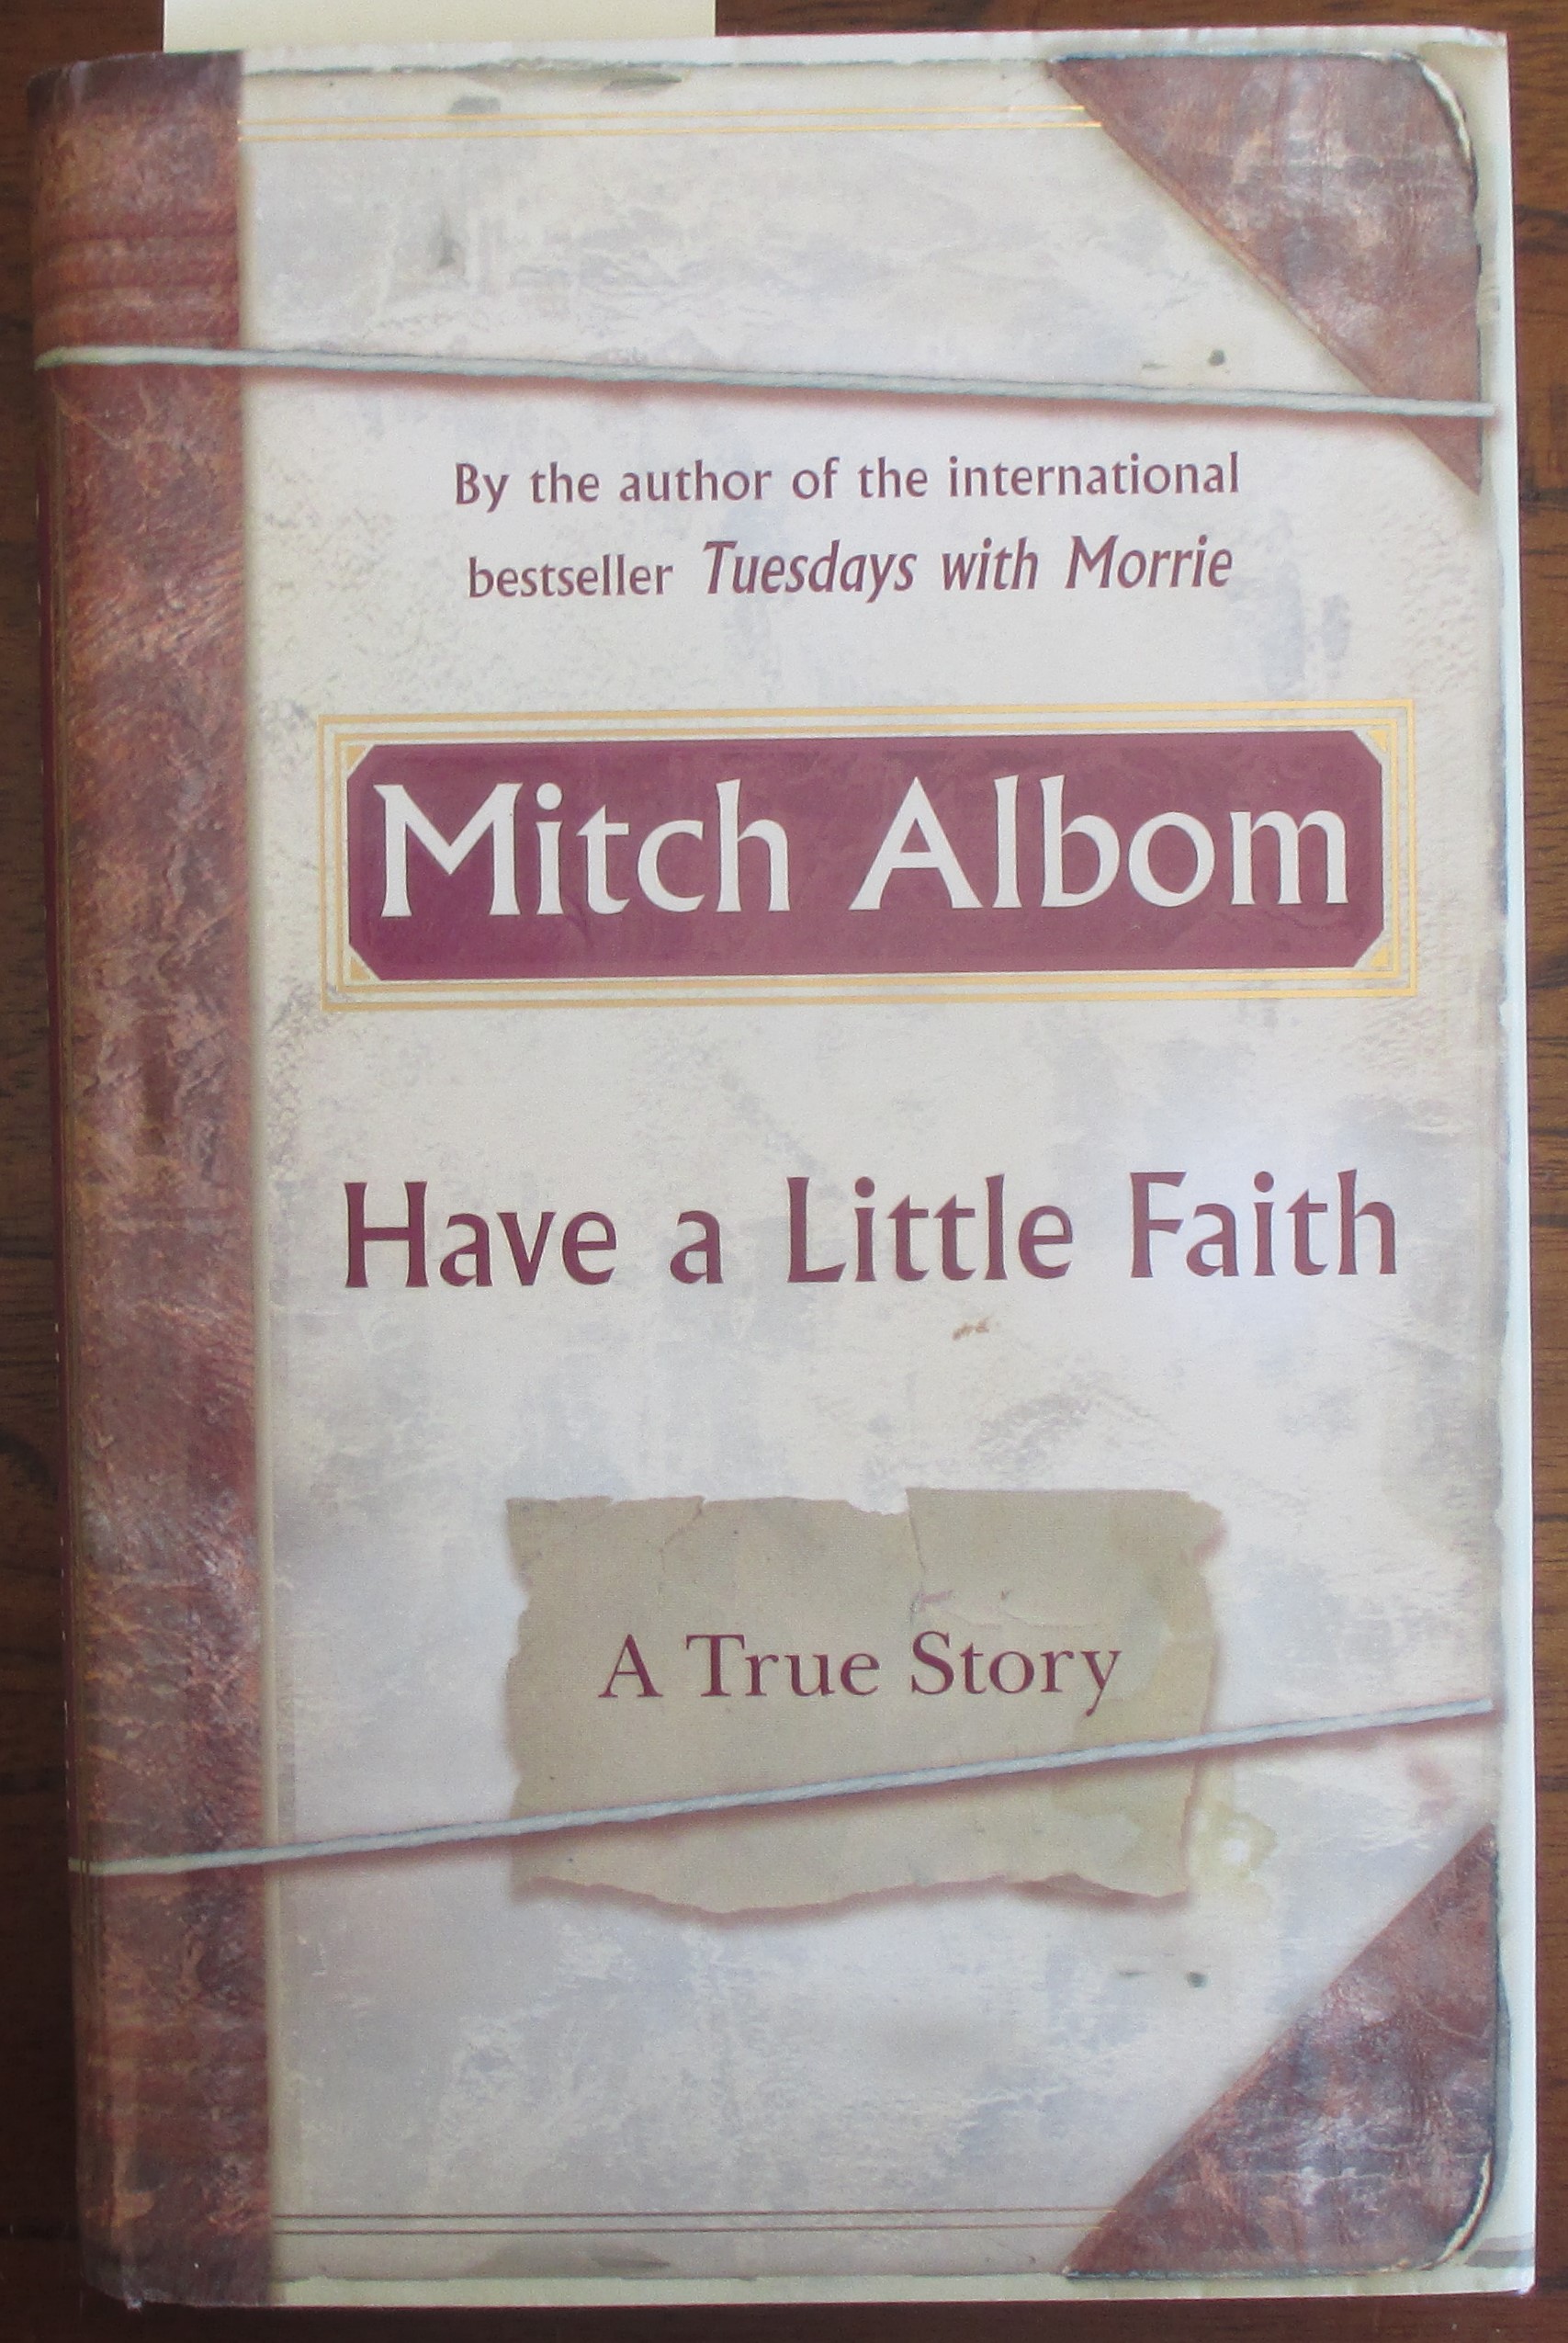 Story　Little　Have　A　True　a　Faith: